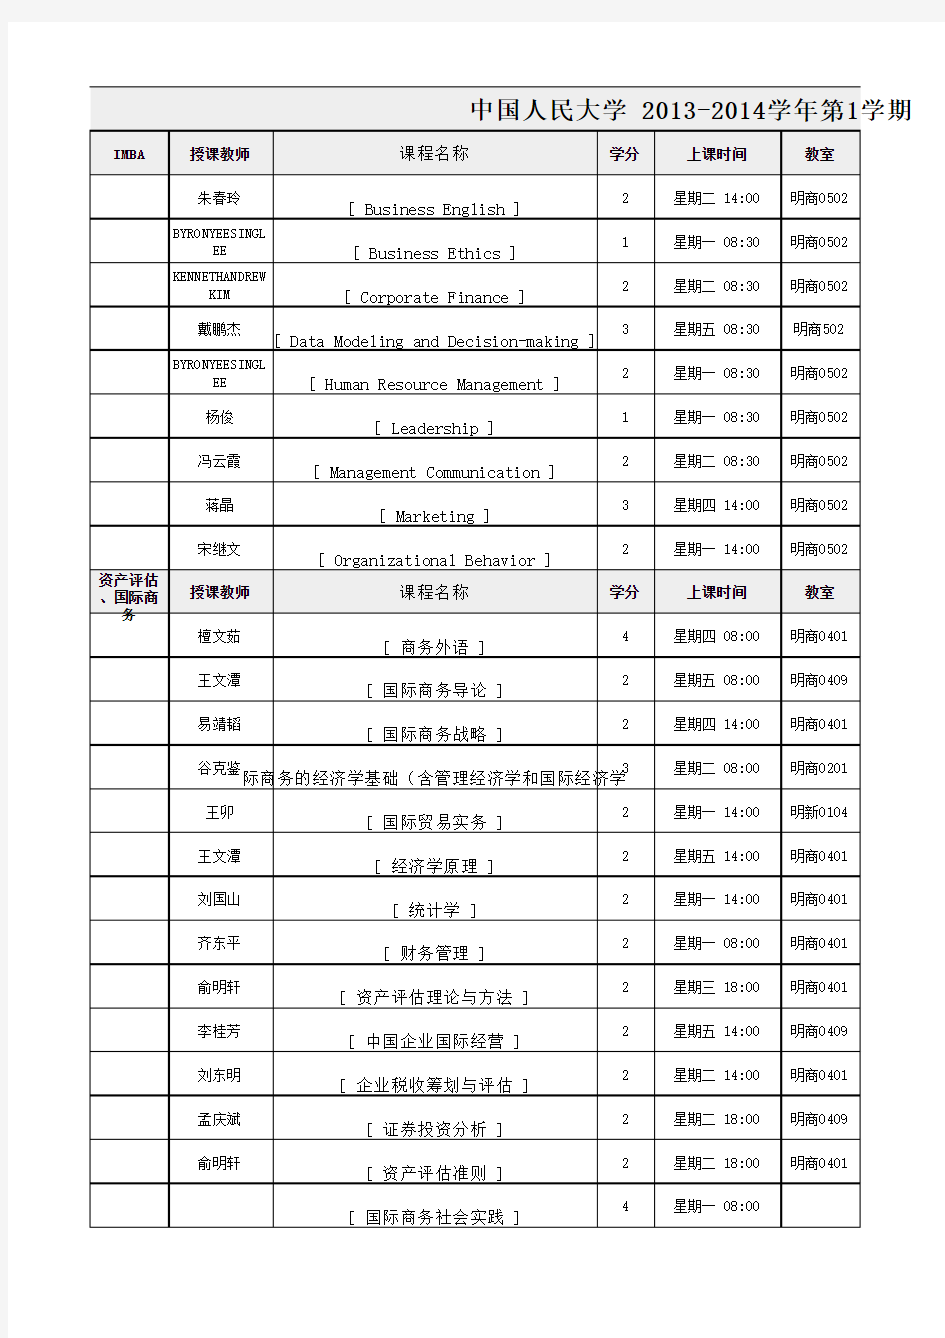 中国人民大学 2013-2014学年第1学期研究生课程表开课表